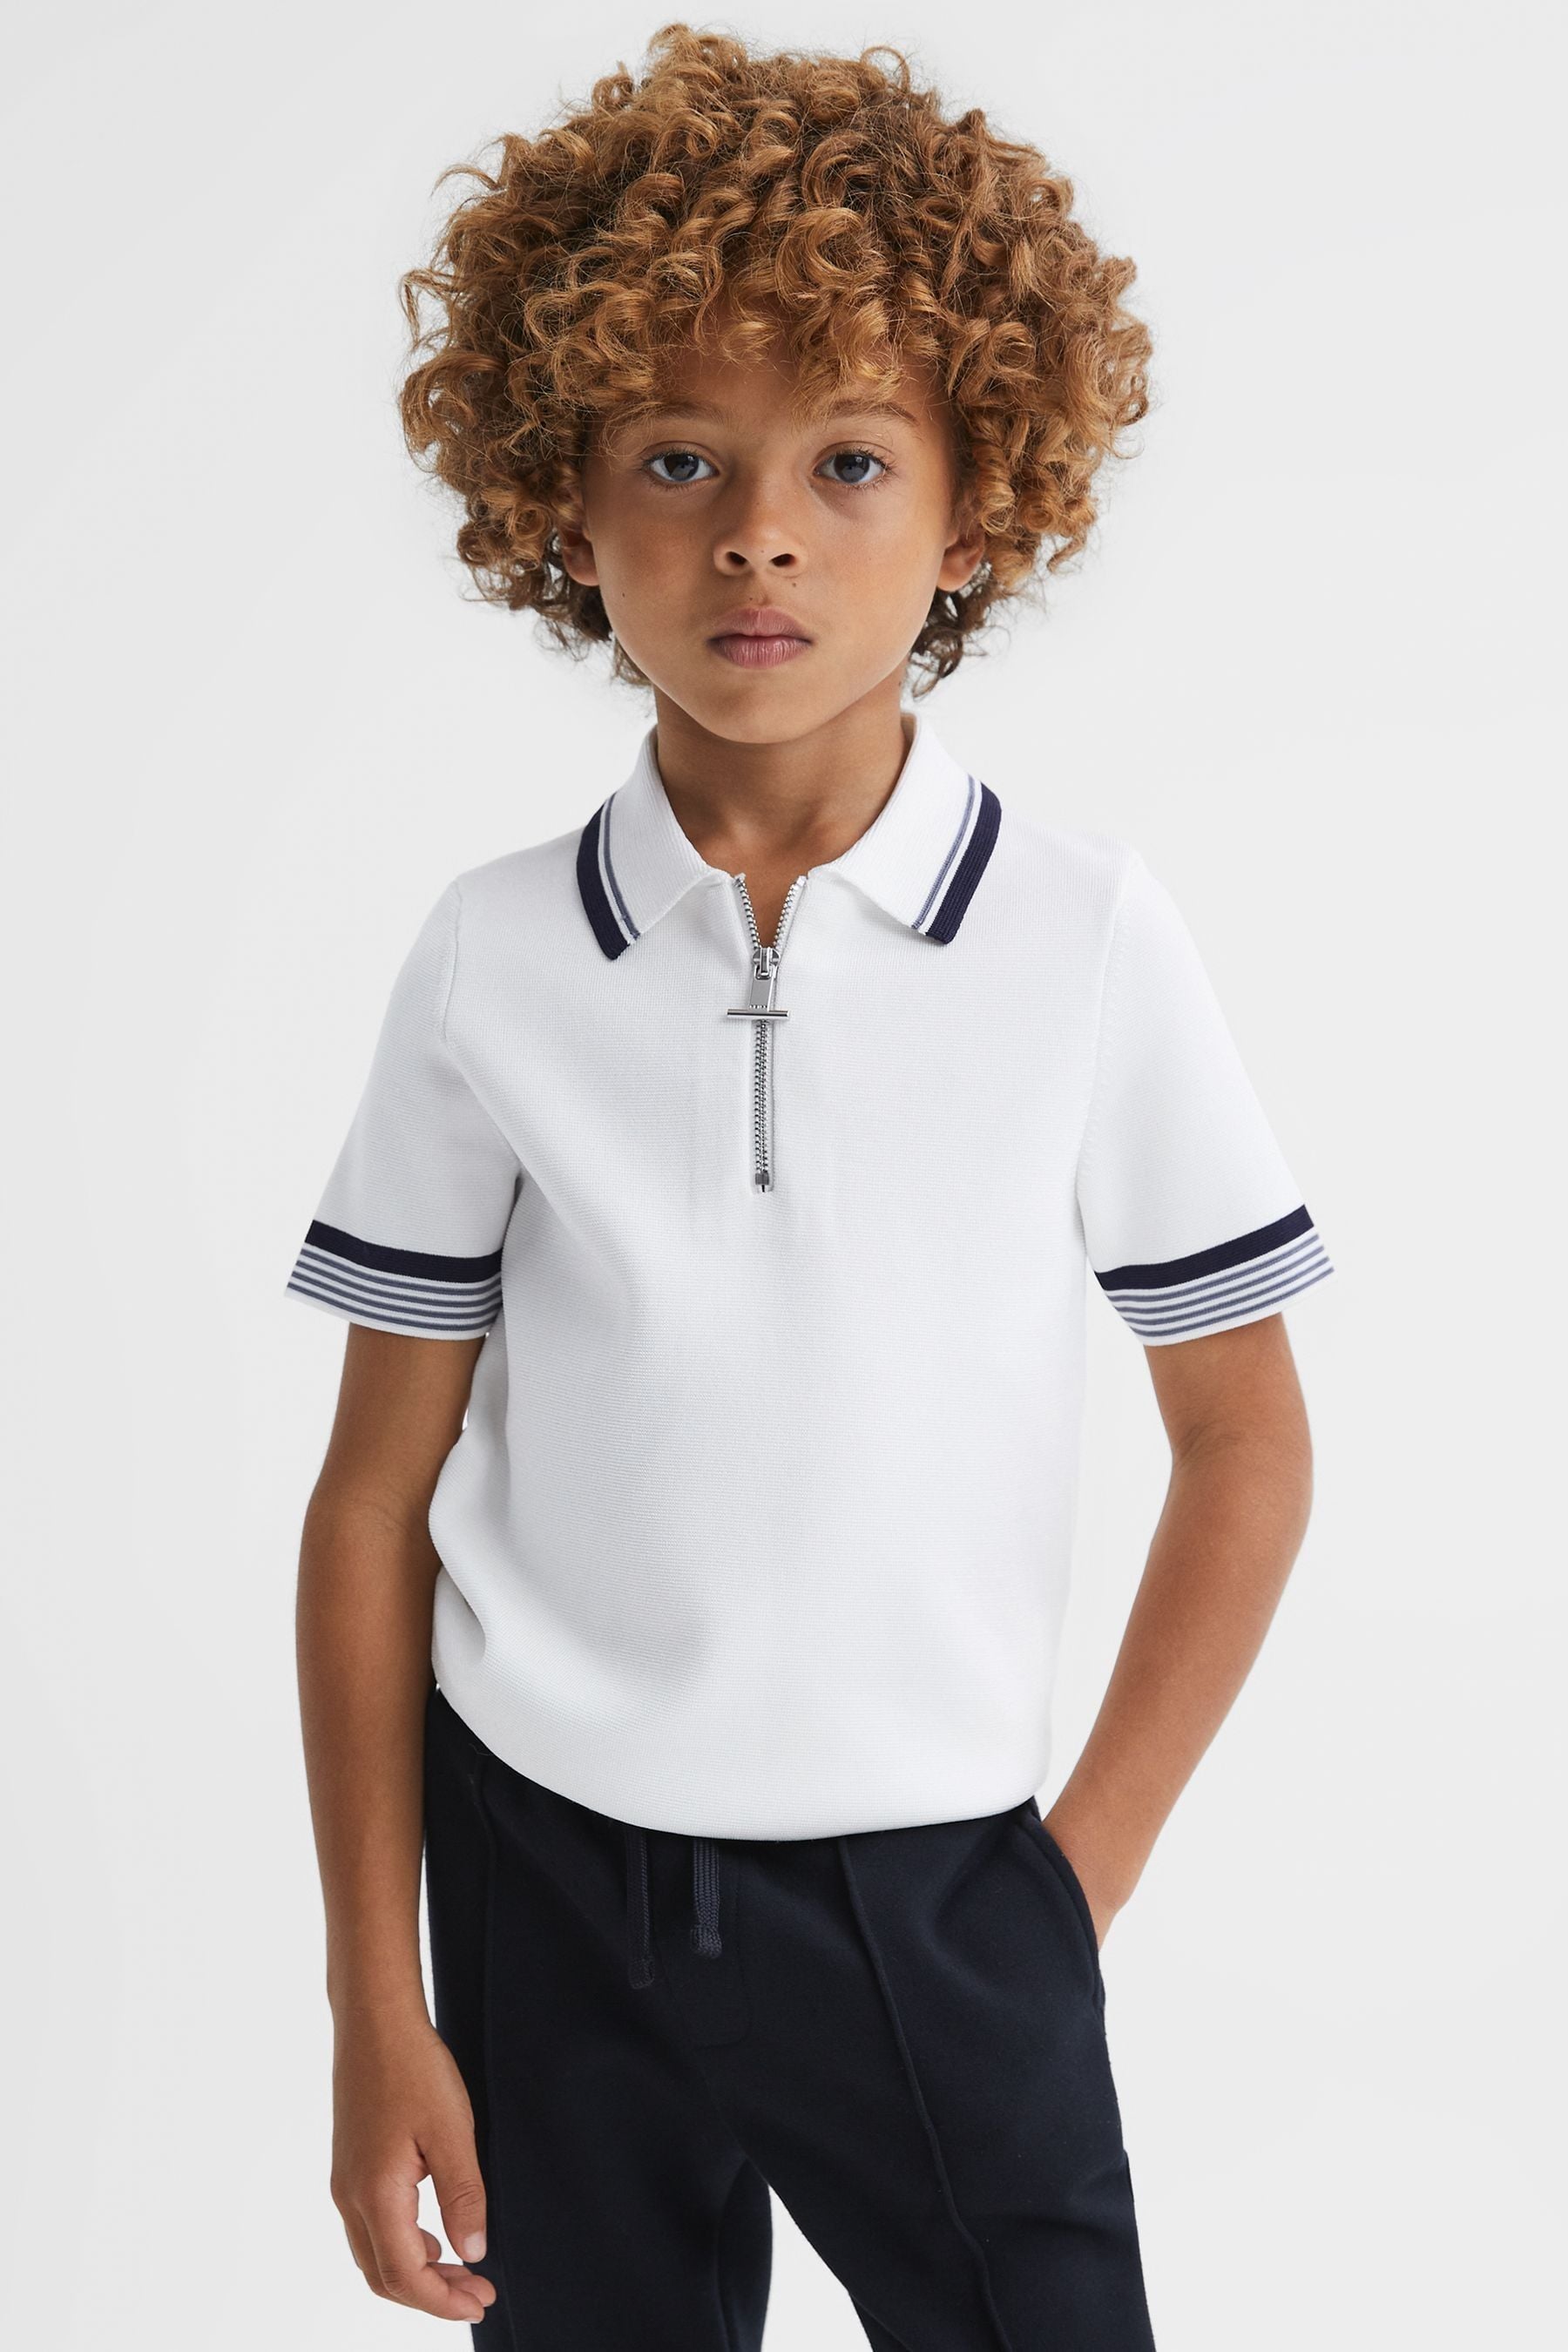 Reiss Chelsea - Optic White Junior Half-zip Polo Shirt, Age 4-5 Years